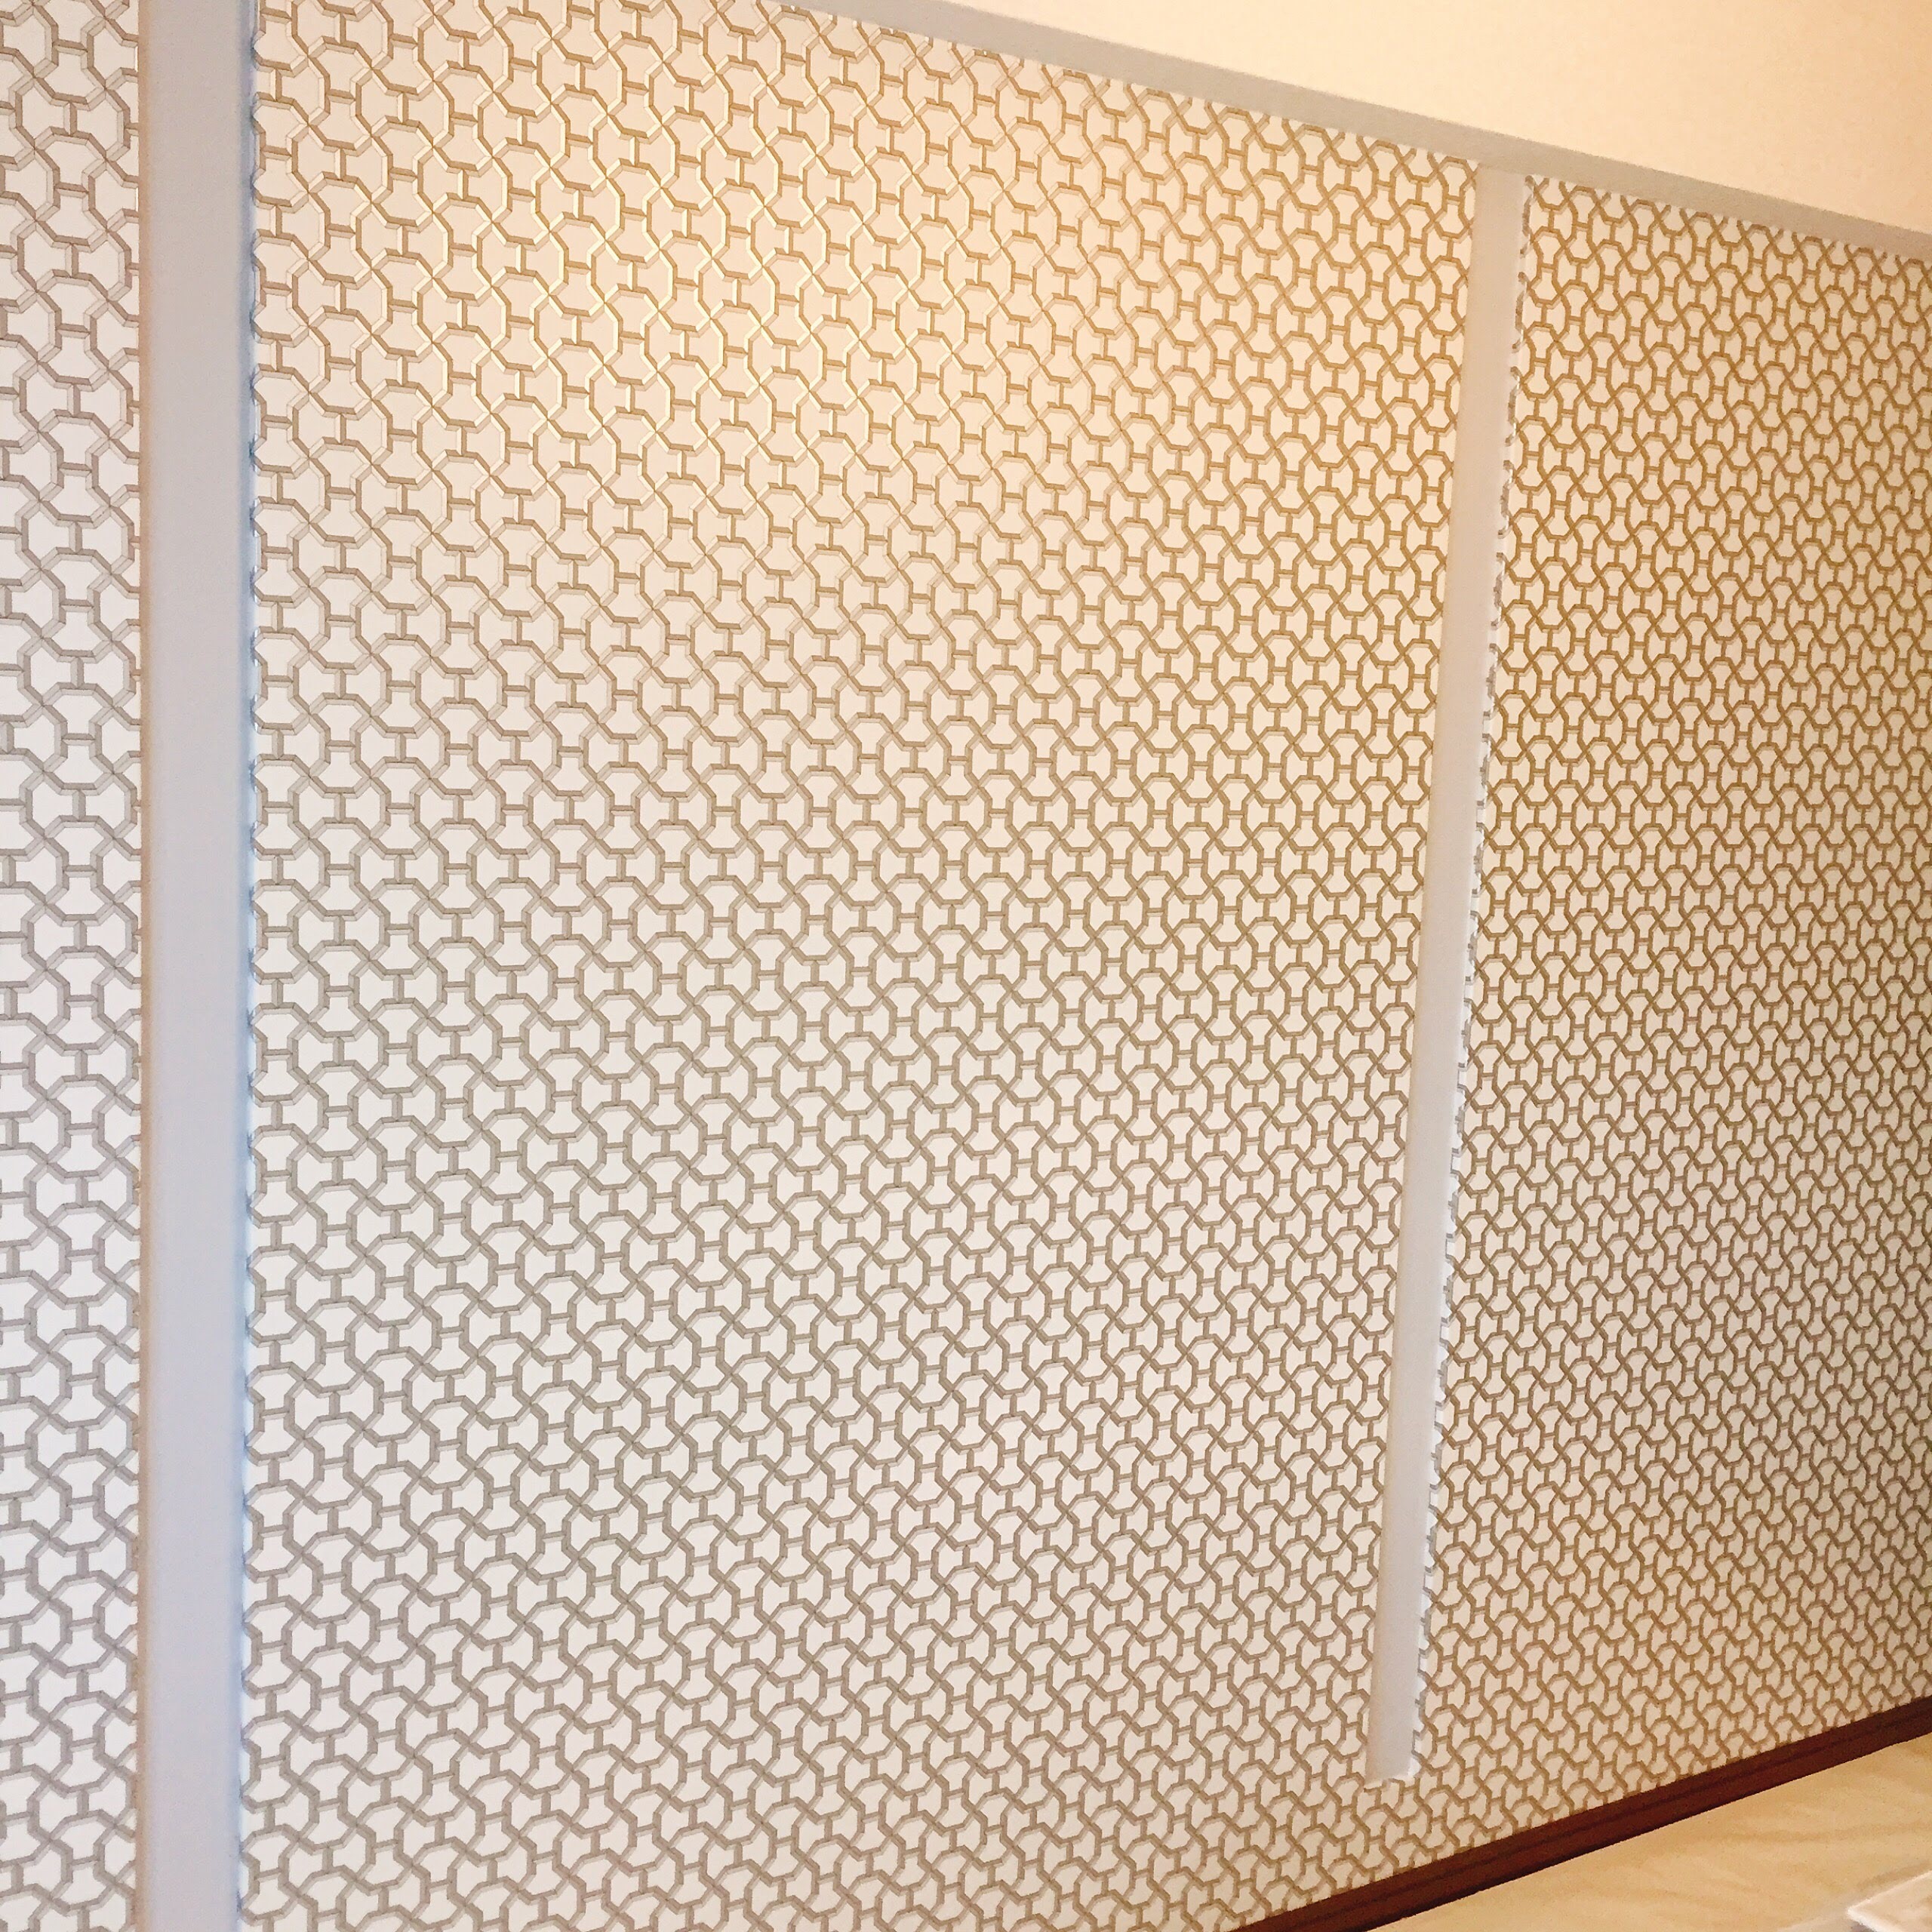 高級ブランド エルメスの壁紙で叶うラグジュアリーな空間 ブログ 輸入壁紙施工専門の株式会社walls